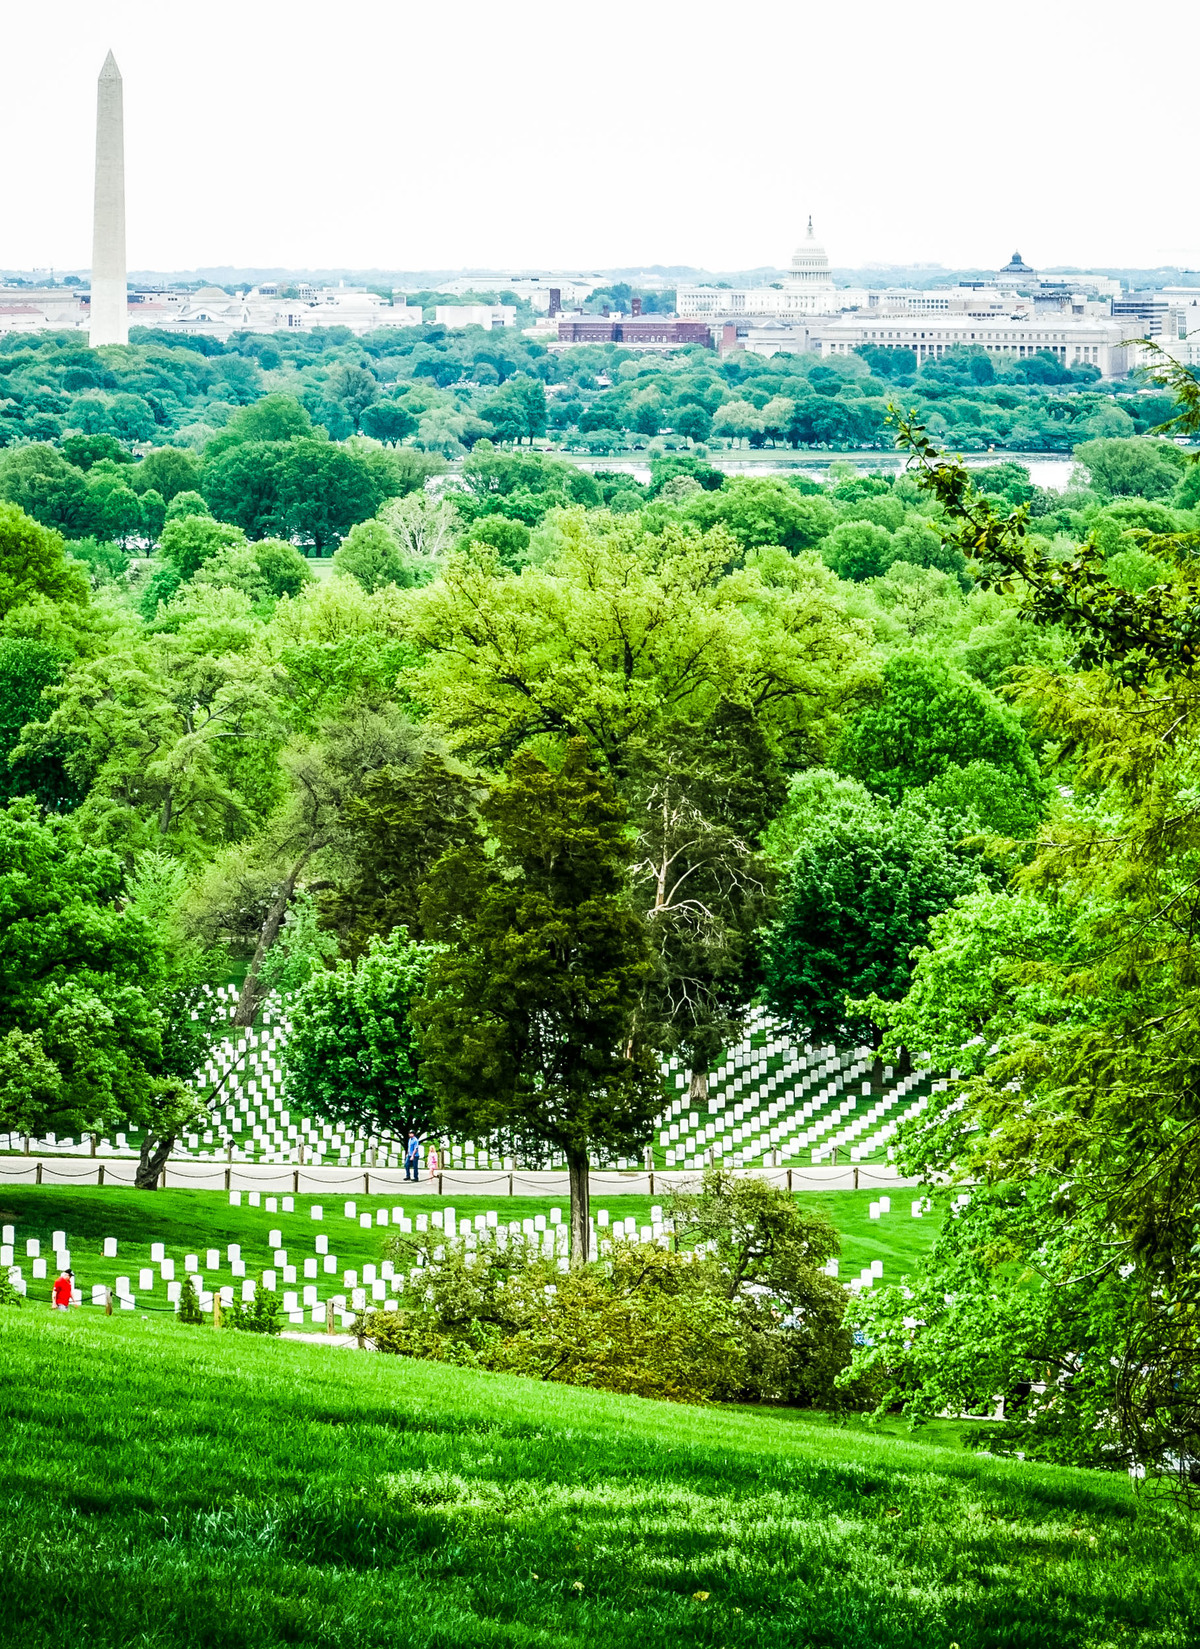 11 cosas que debe saber antes de visitar el cementerio nacional de Arlington - 21